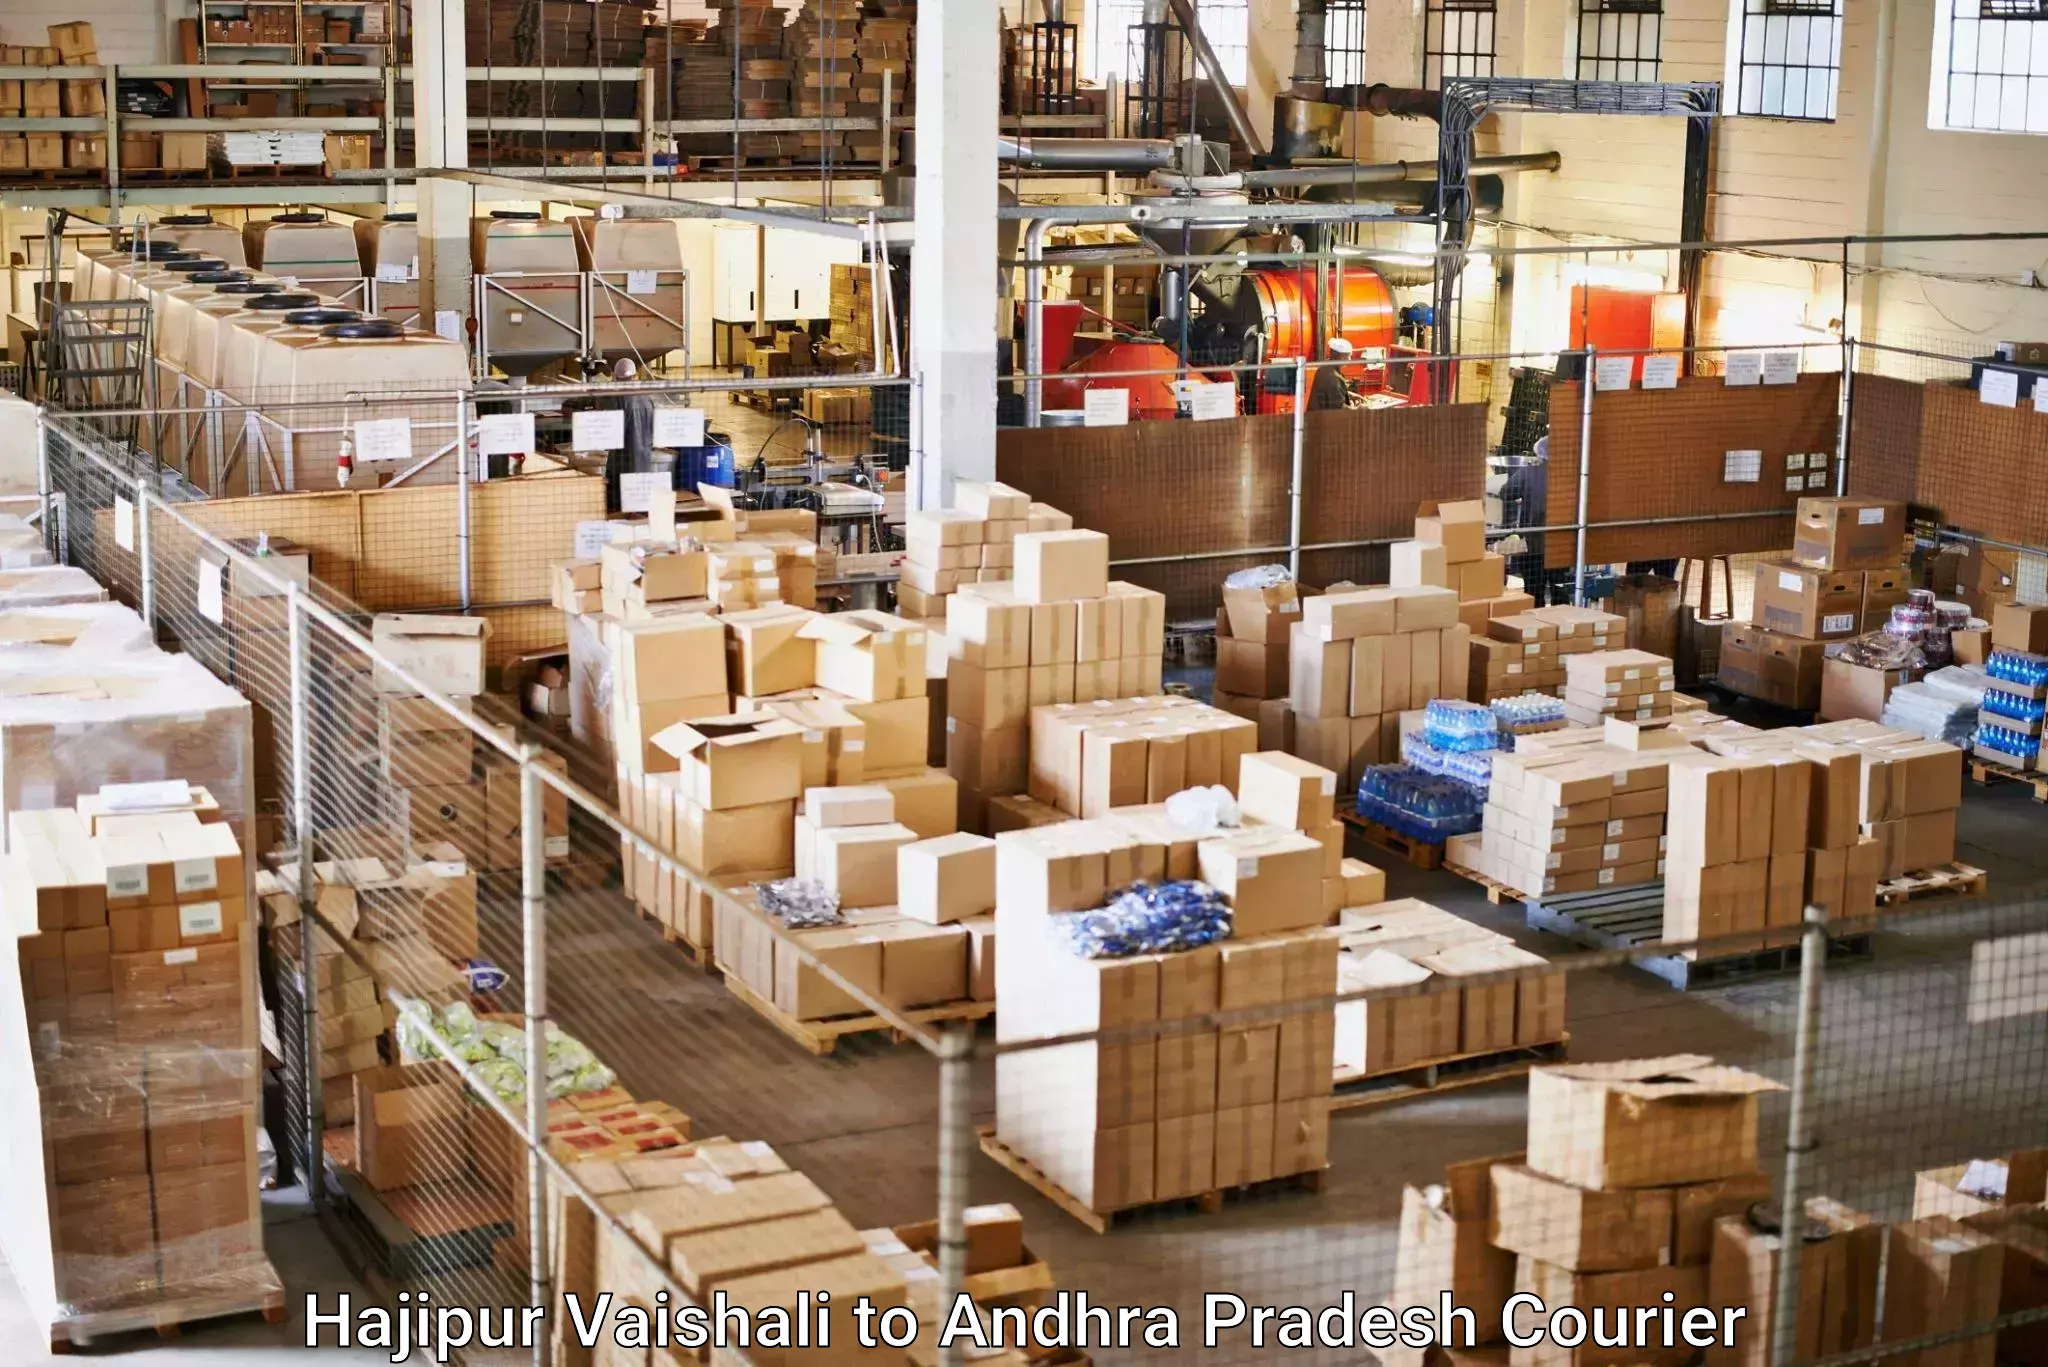 Tech-enabled shipping in Hajipur Vaishali to Pathapatnam